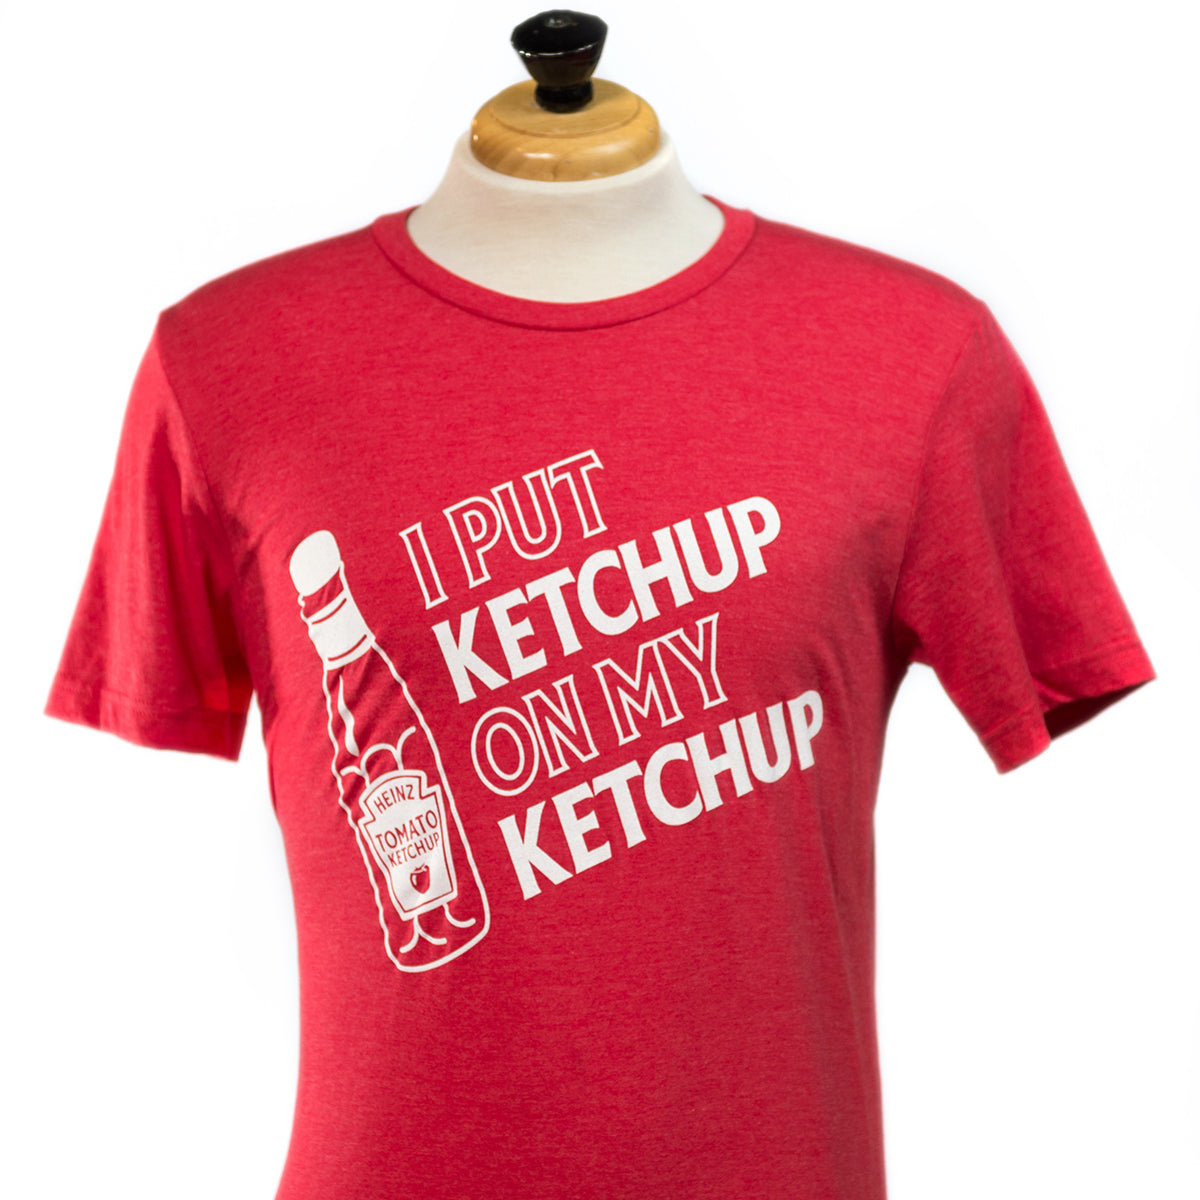 "I Put Ketchup on My Ketchup" T-Shirt